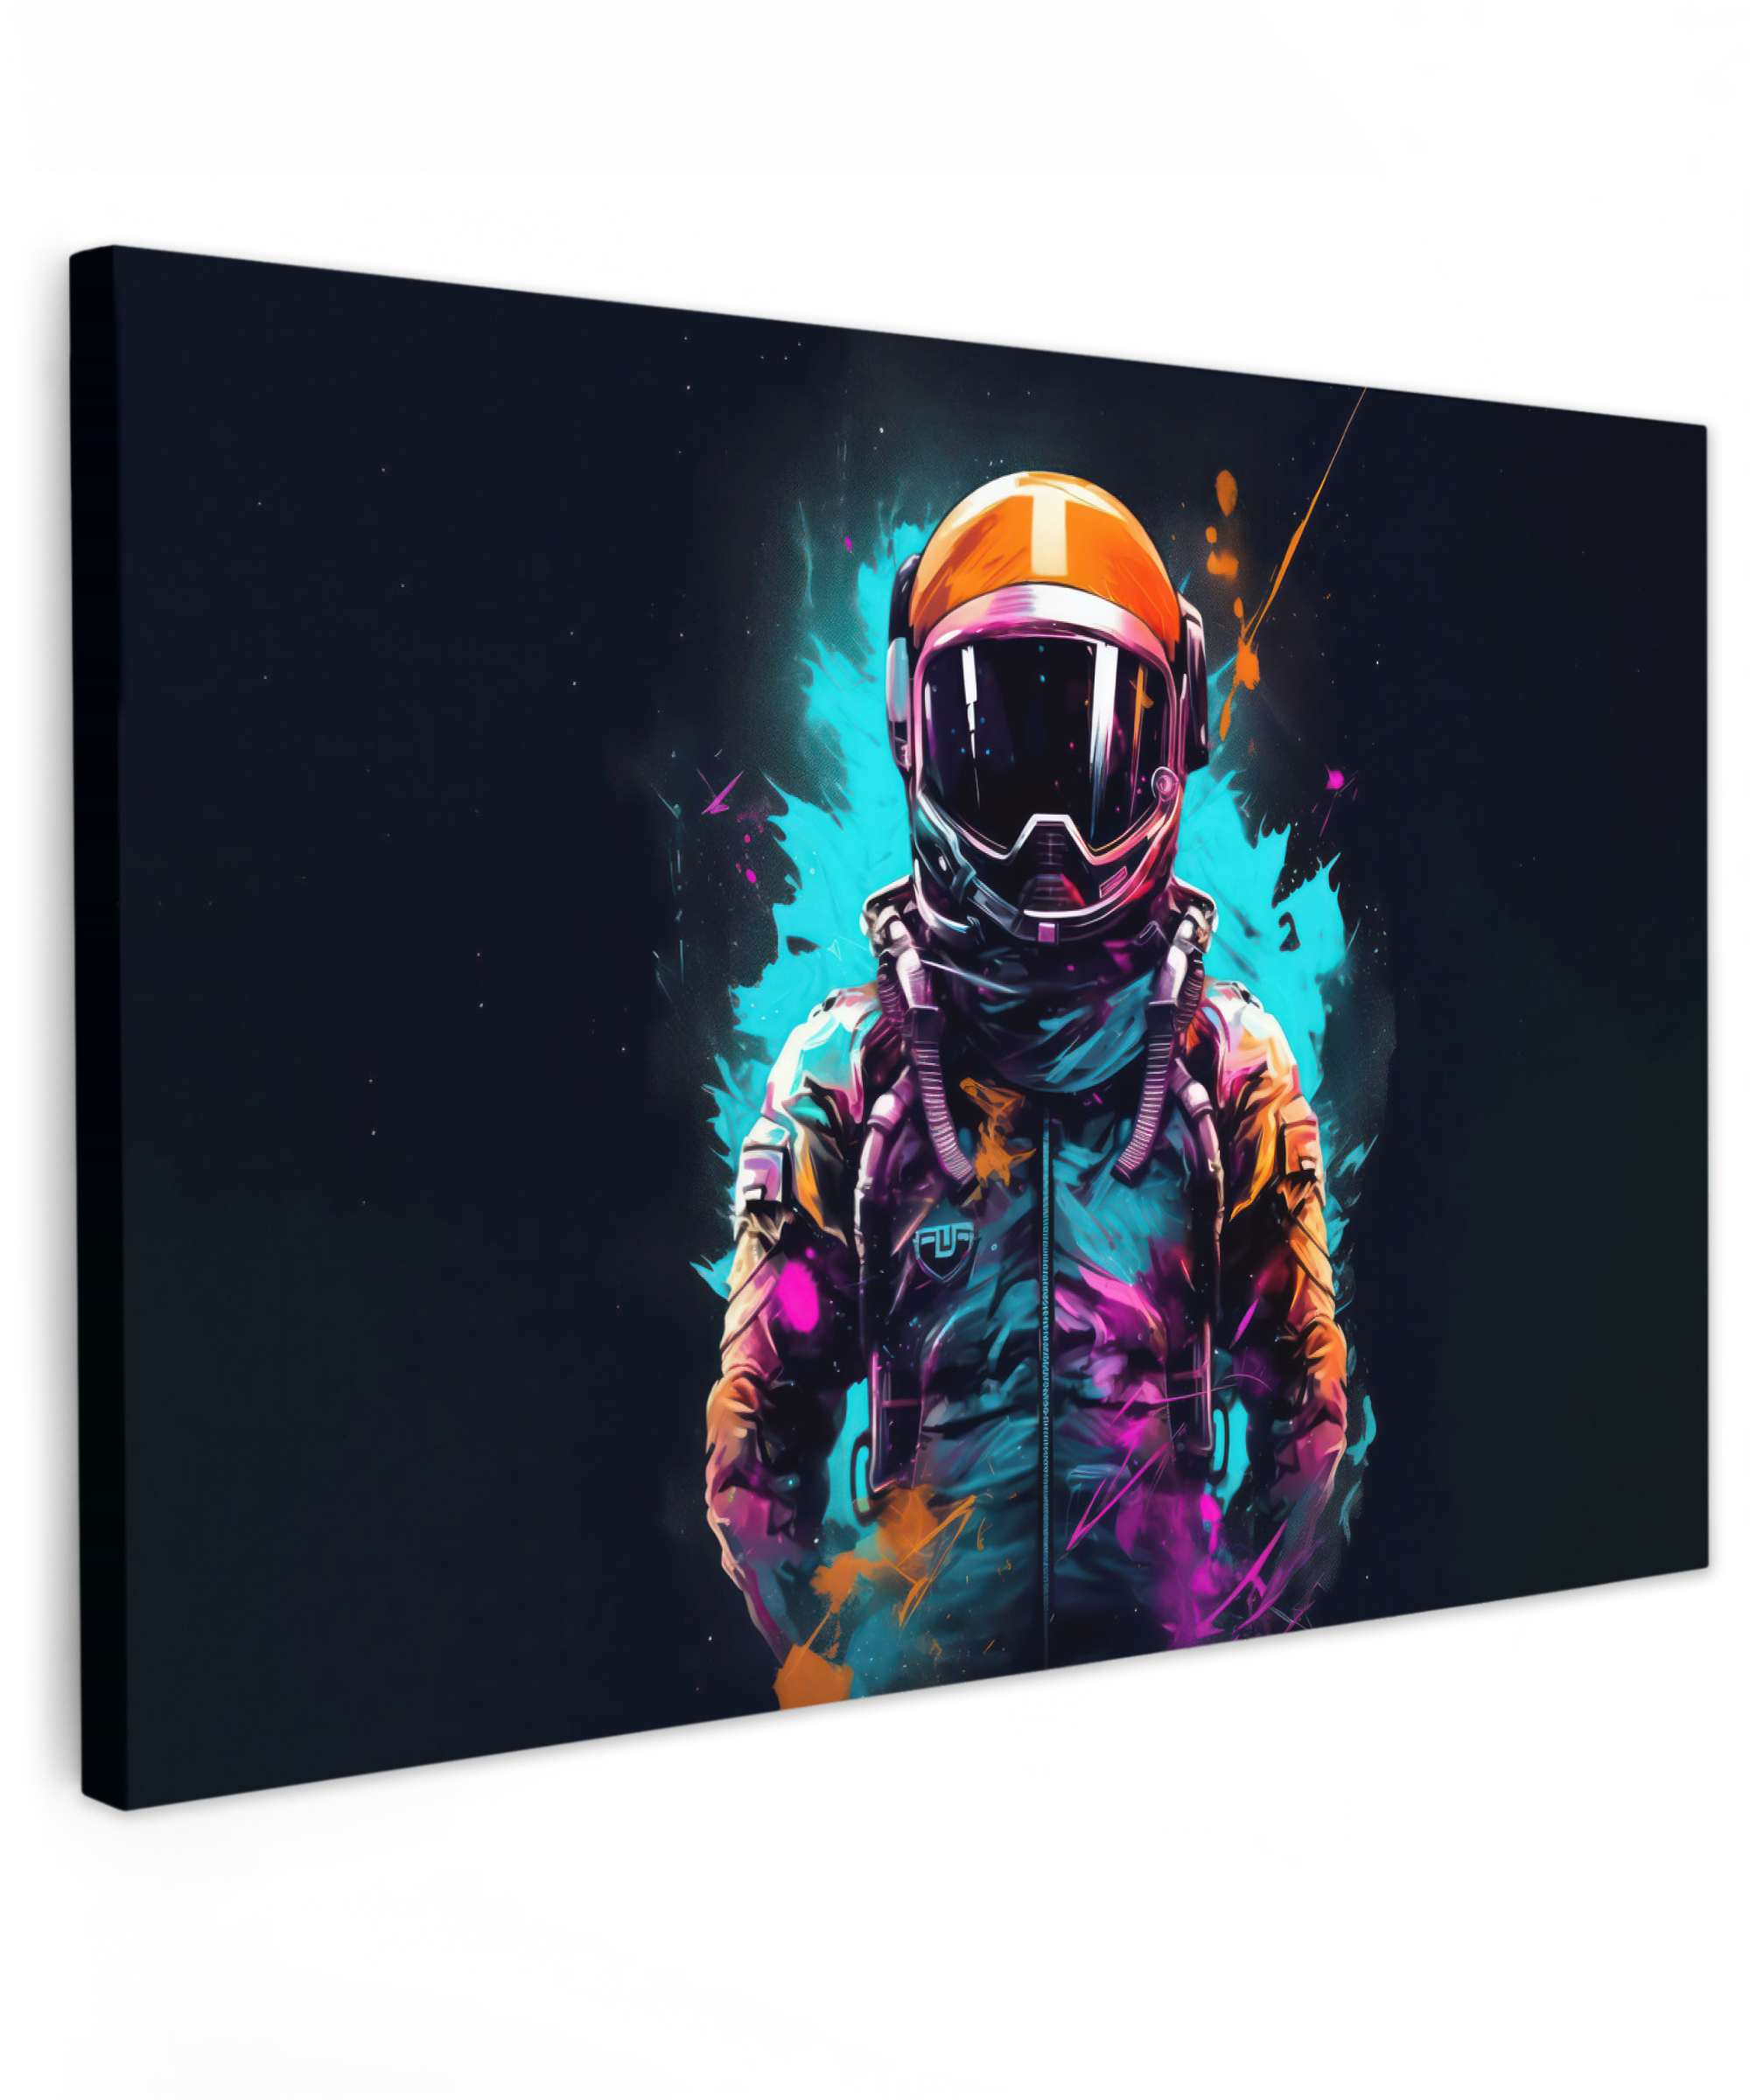 Canvas schilderij - Astronaut - Neon - Gaming - Ruimte